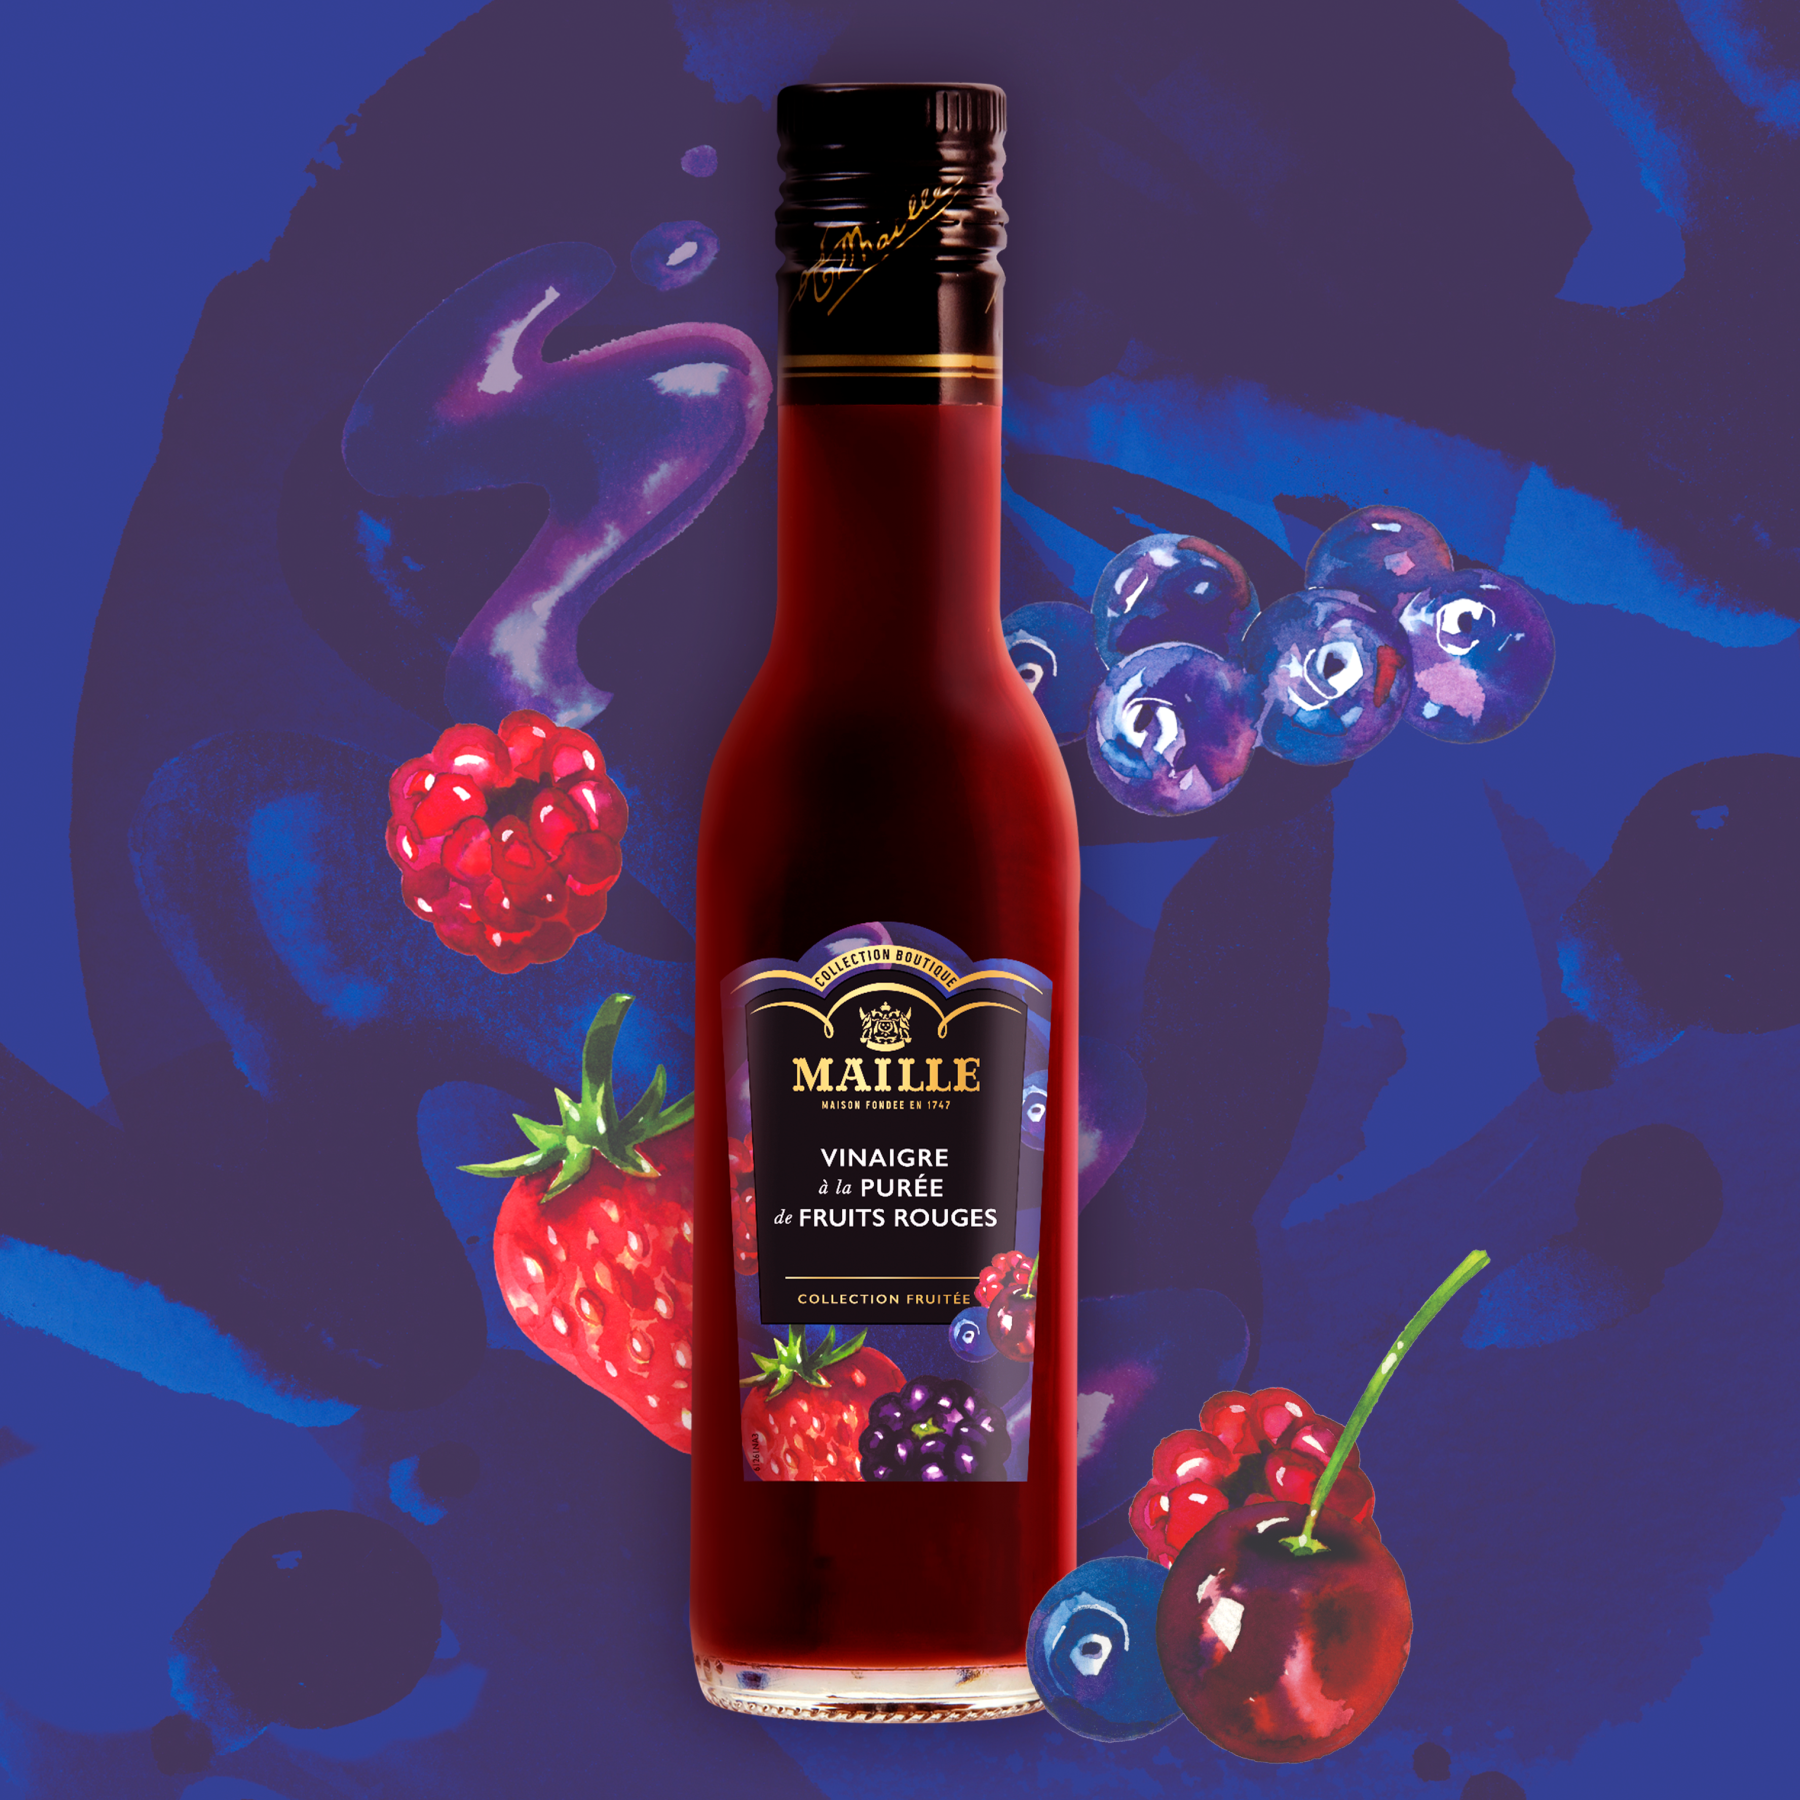 Maille - Vinaigre a la puree de fruits rouges, 250 ml, new visual